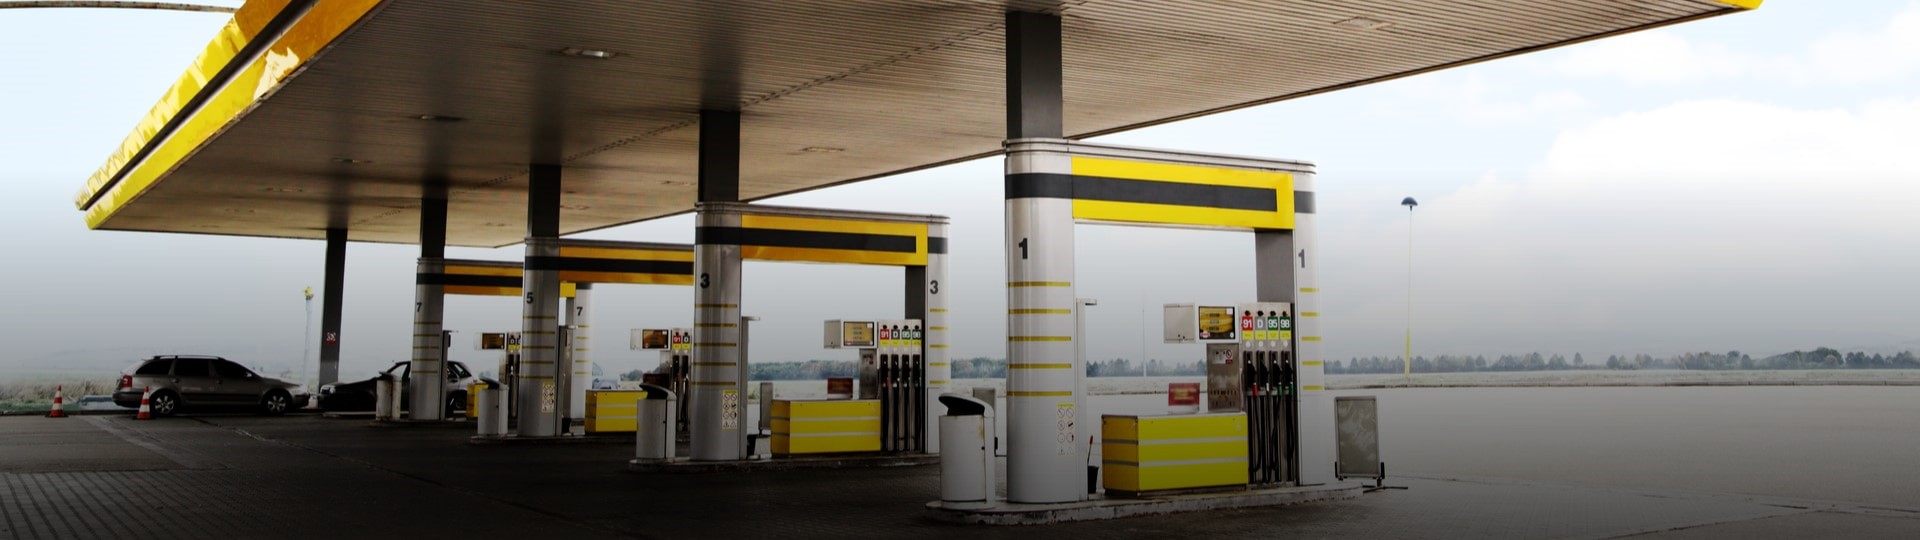 Ceny na čerpacích stanicích zlenivěly a téměř se nemění